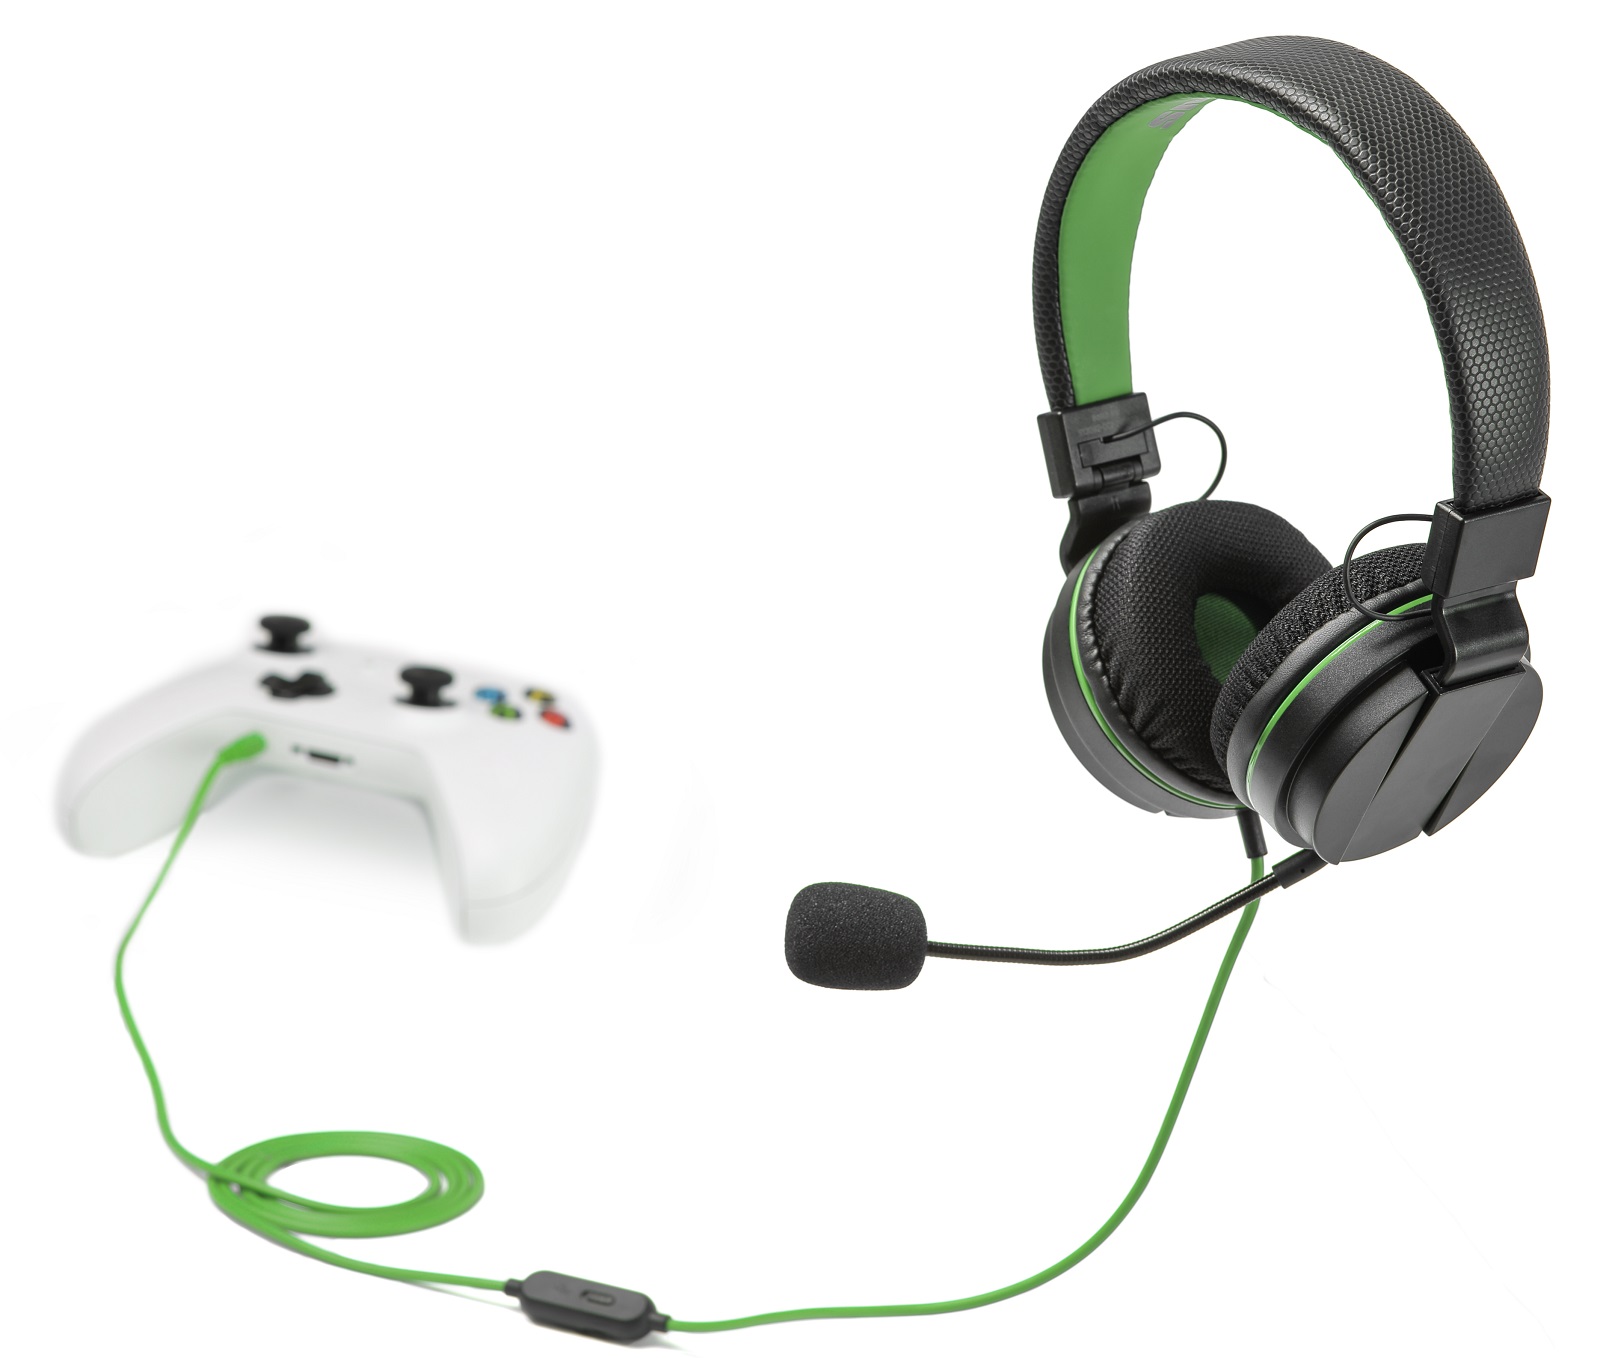 Купить наушники xbox с микрофоном. Гарнитура Xbox stereo Headset. X15 Wireless Headset наушники. Наушники с микрофоном для хбокс s. Наушники для Xbox one с микрофоном.